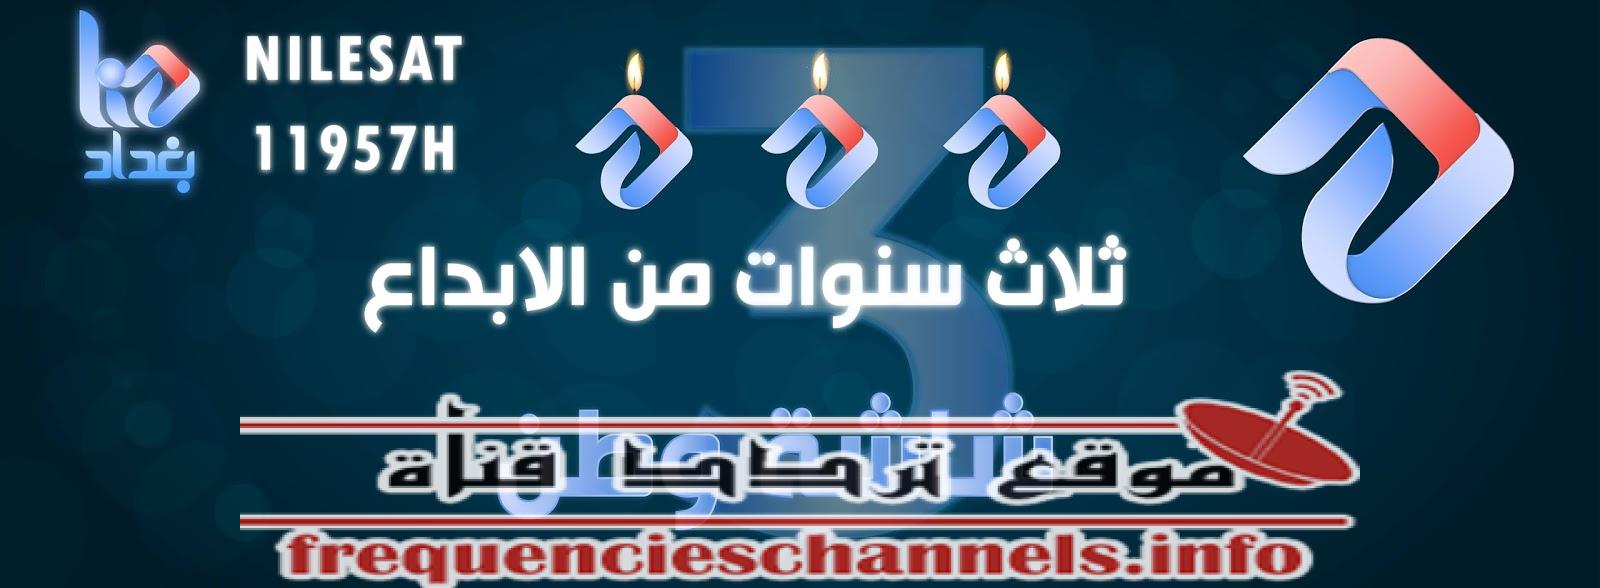 تردد قناة هنا بغداد على النايل سات 2018 تردد Baghdad Hona الجديد